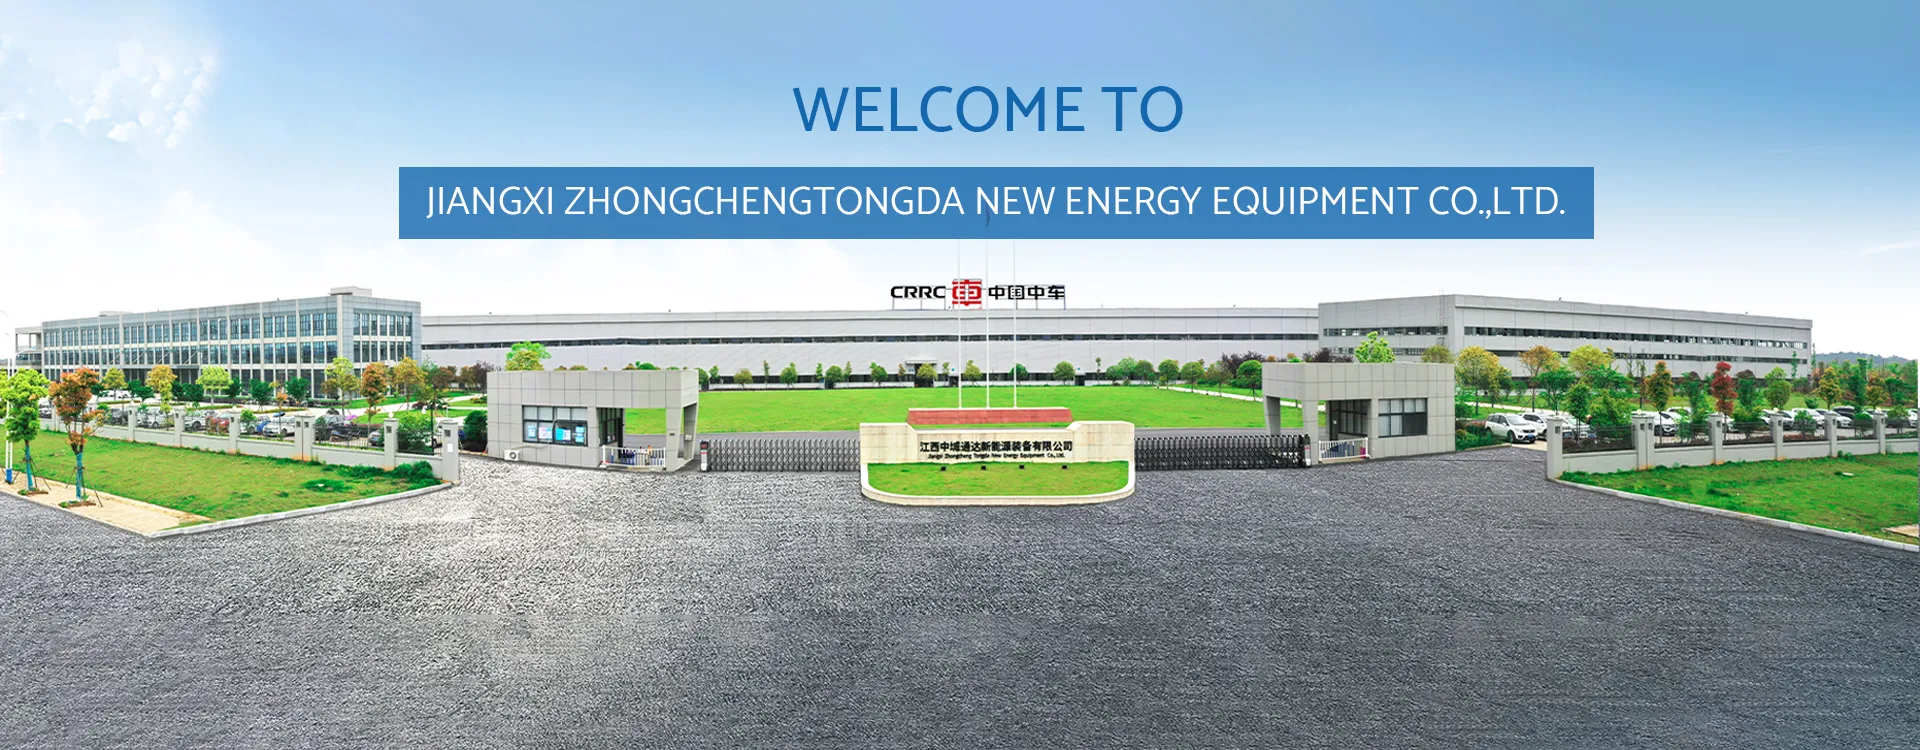 شركة Jiangxi Zhongchengtongda New Energy Equipment Co. ، Ltd.